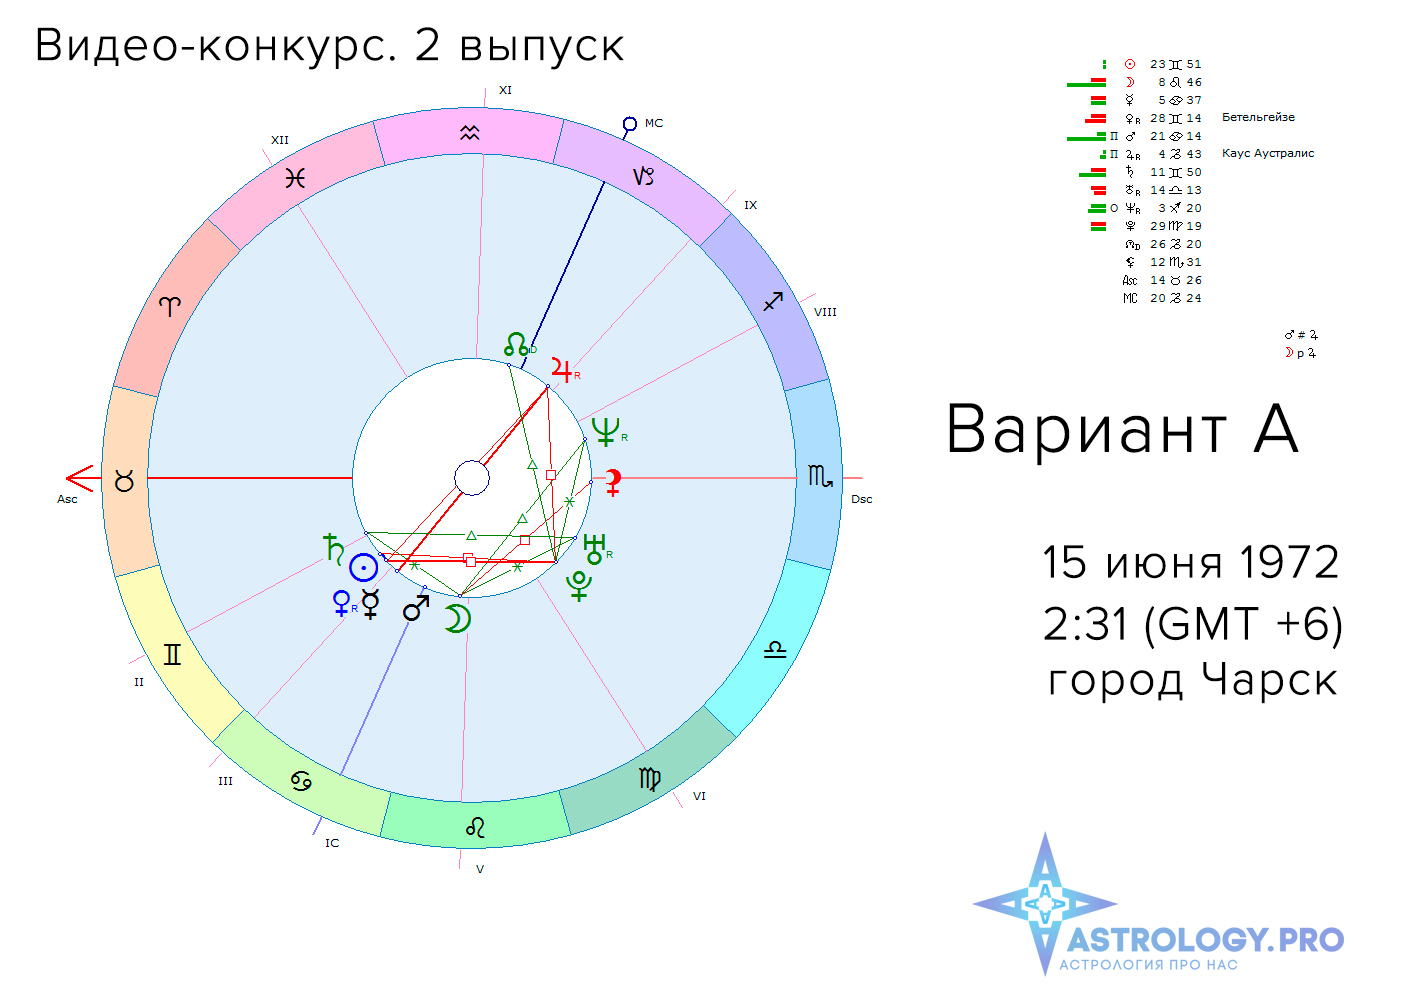 Рейтинг Астрологов России